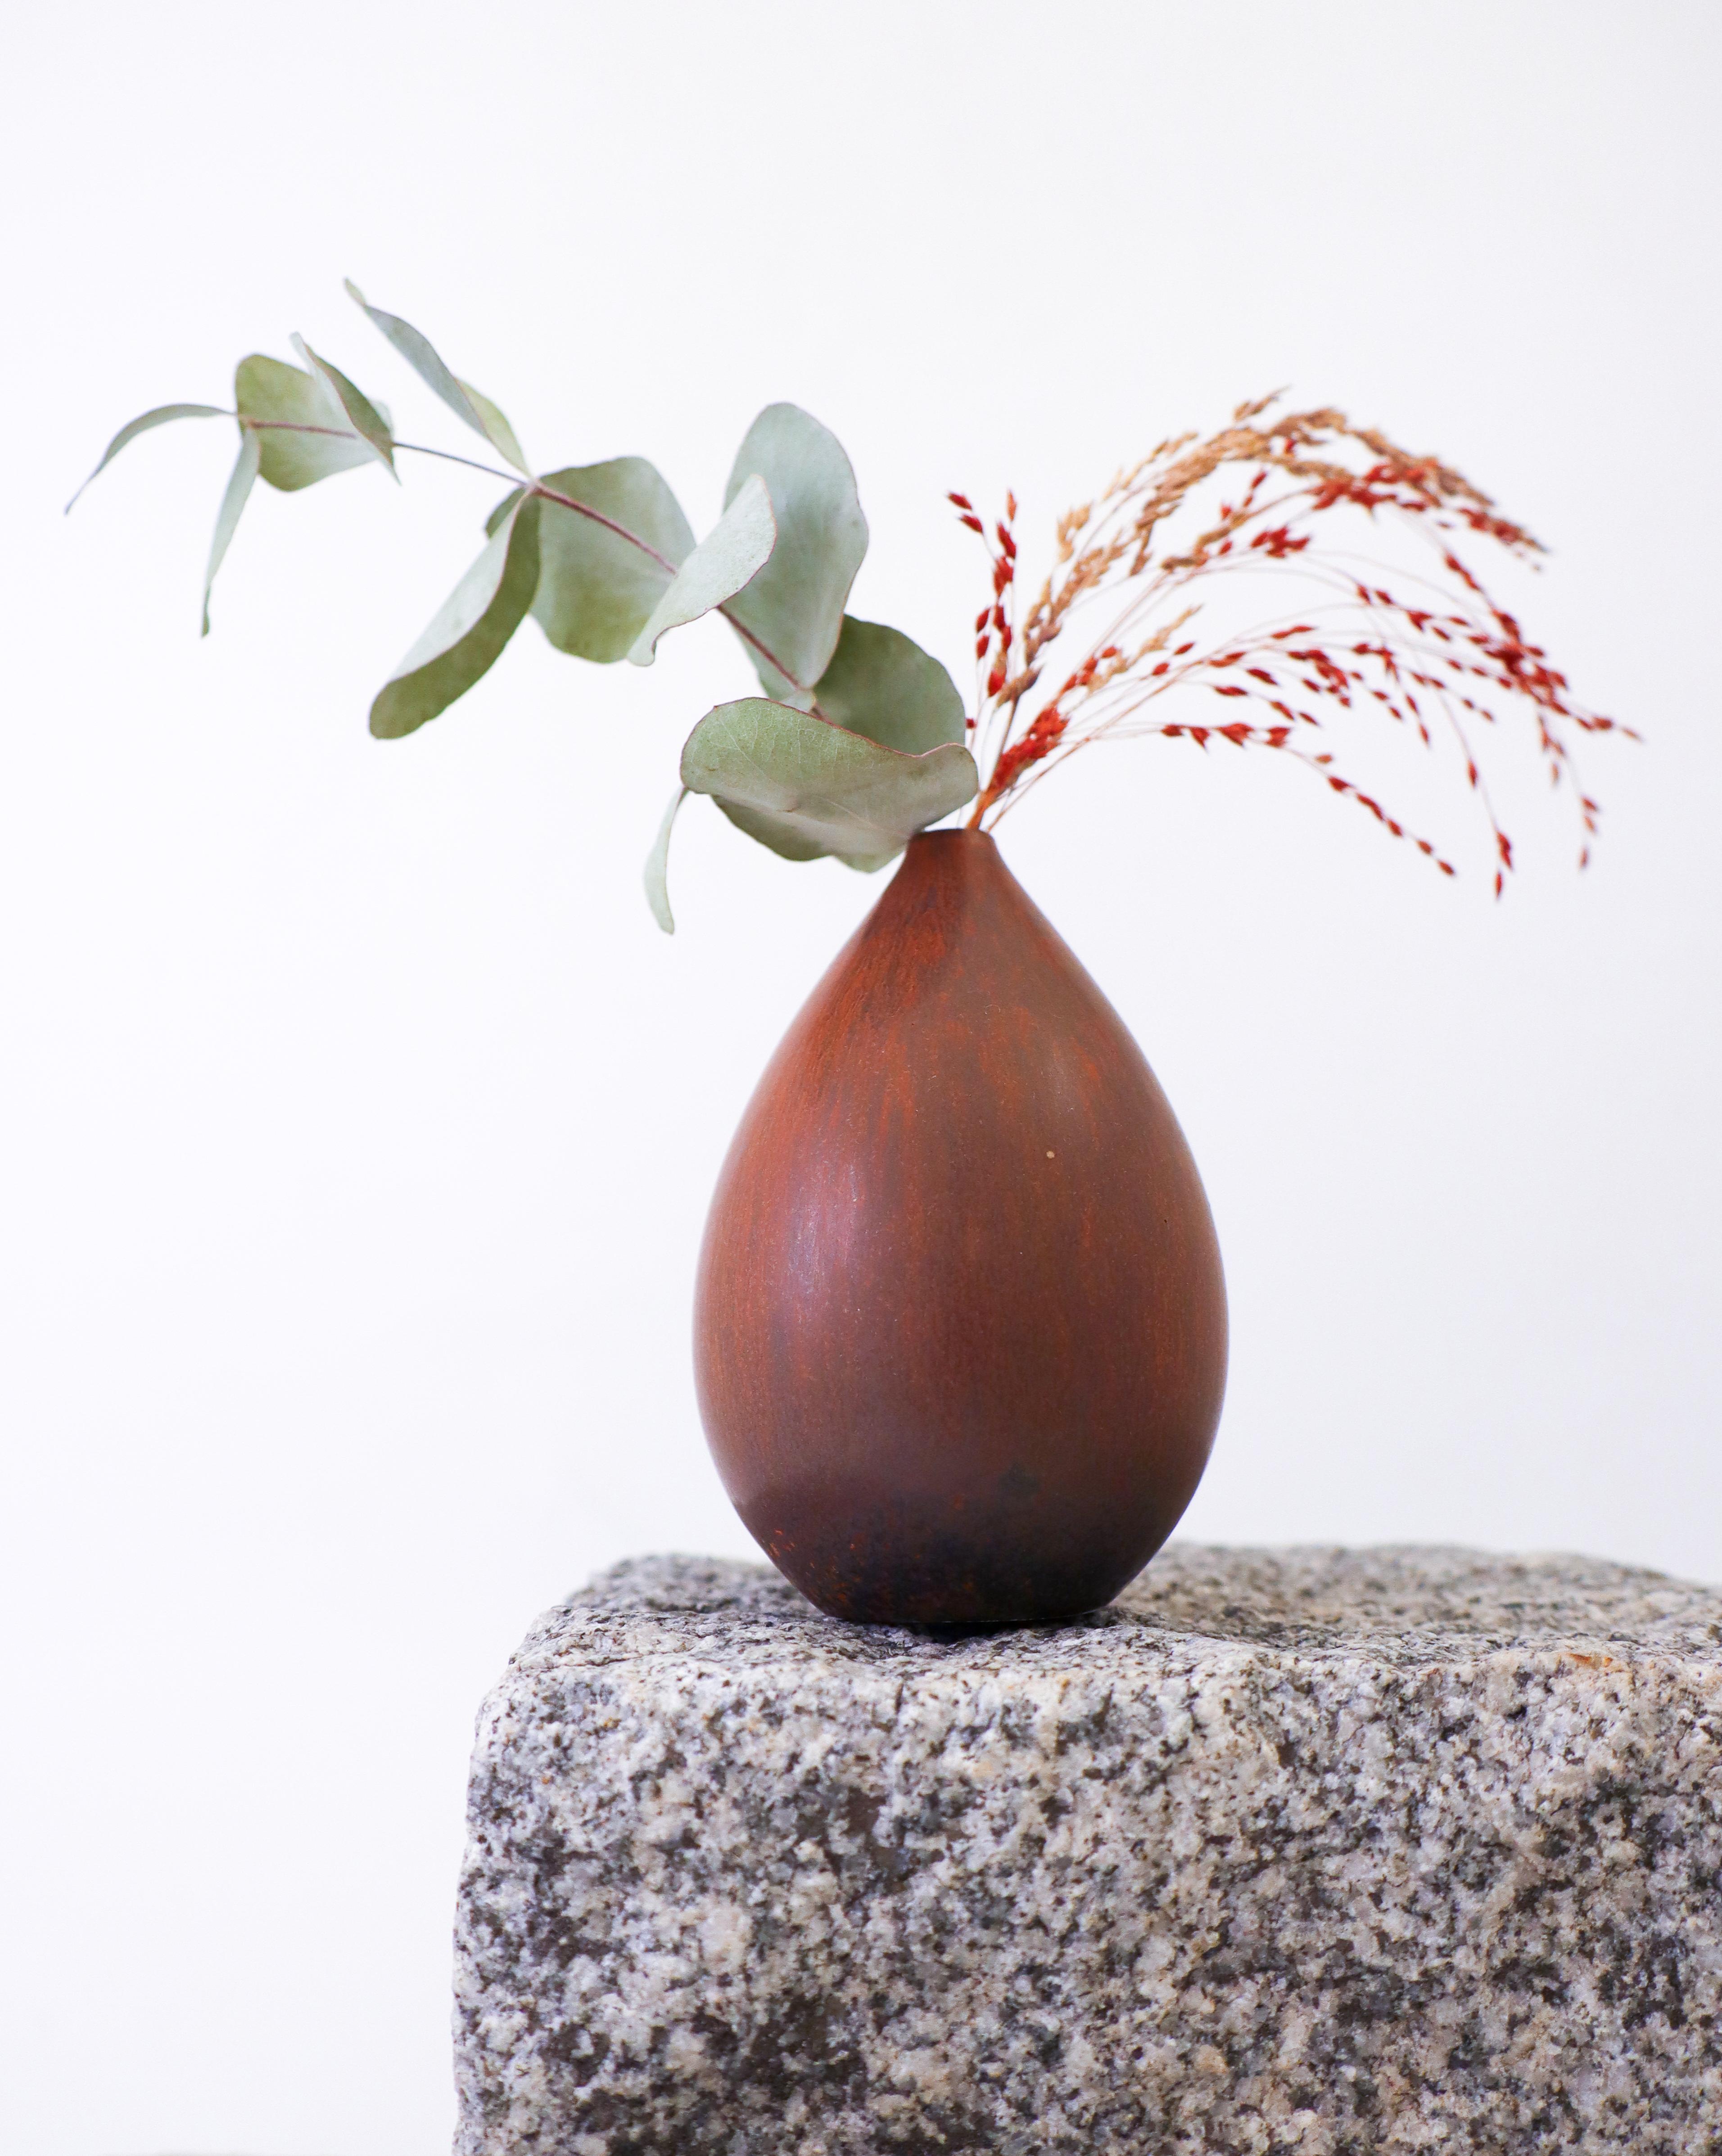 Un vase vintage marron conçu par Carl-Harry Stålhane chez Rörstrand au milieu du 20ème siècle, il mesure 10 cm de haut et est en parfait état. Il est marqué comme étant de 1ère qualité. 

Carl-Harry Stålhane est l'un des grands noms de la céramique